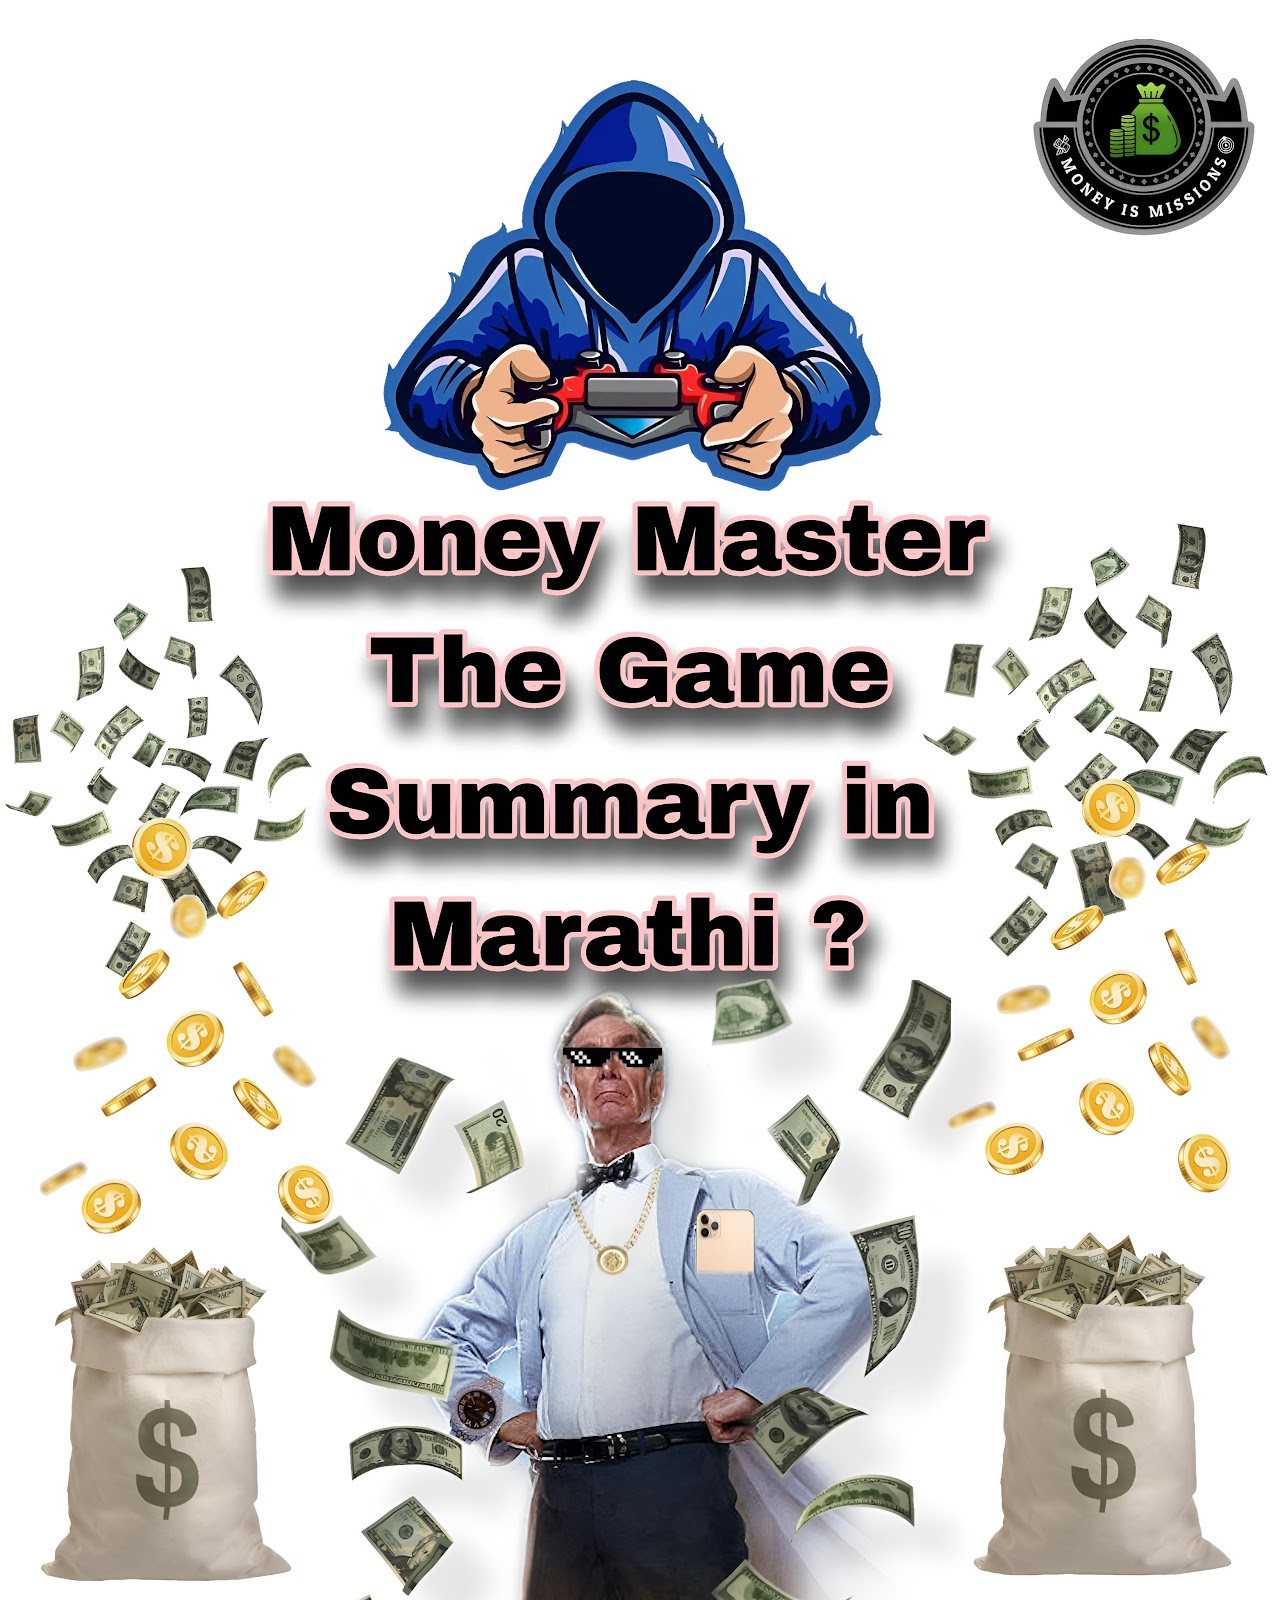 Money Master The Game Summary in Marathi